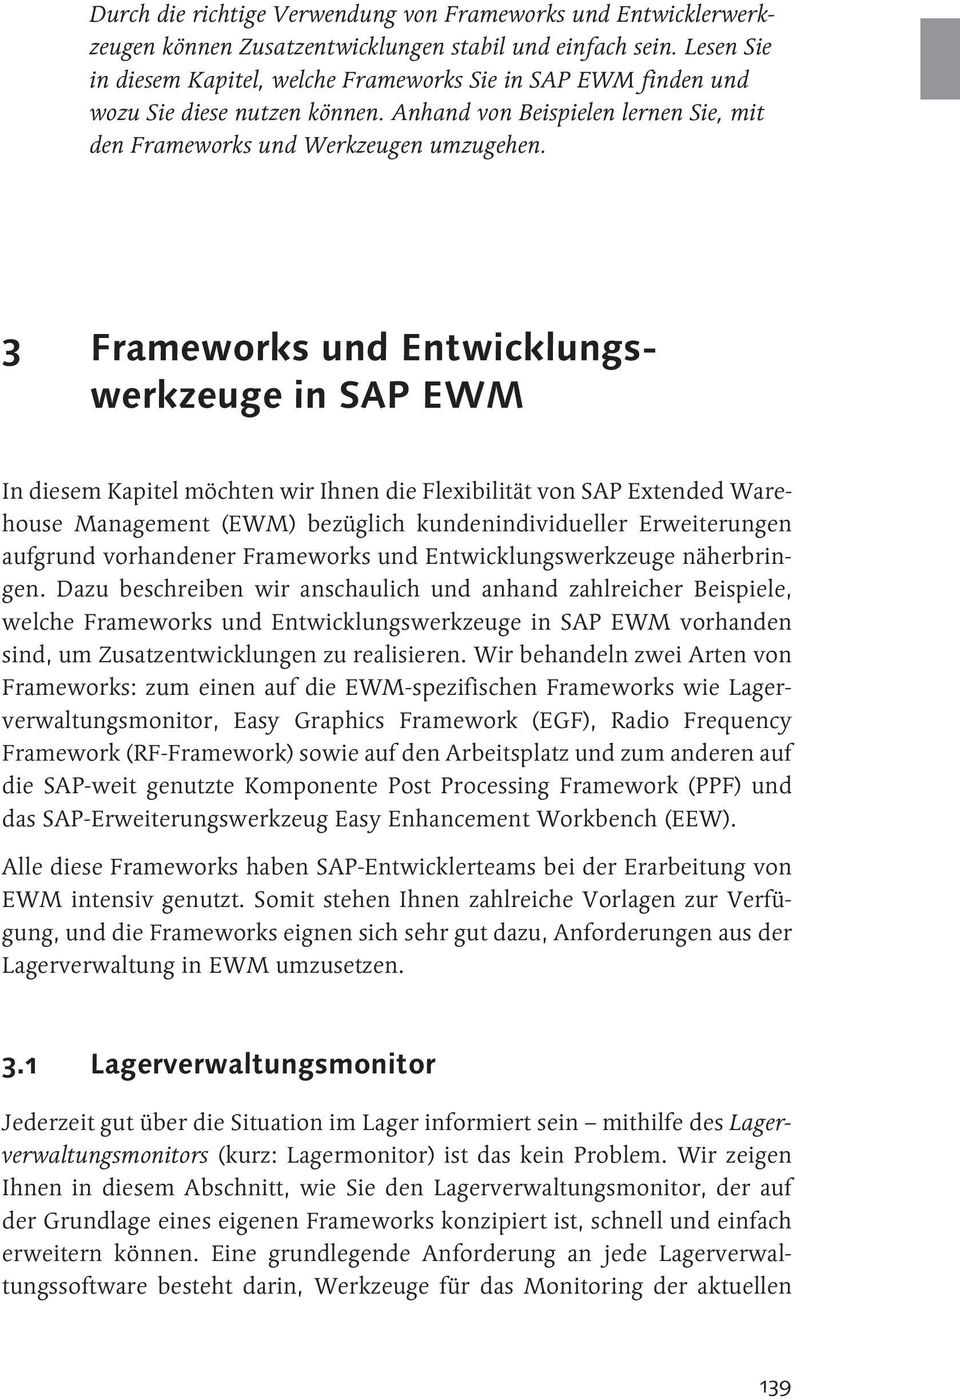 3 Frameworks und Entwicklungswerkzeuge in SAP EWM In diesem Kapitel möchten wir Ihnen die Flexibilität von SAP Extended Warehouse Management (EWM) bezüglich kundenindividueller Erweiterungen aufgrund